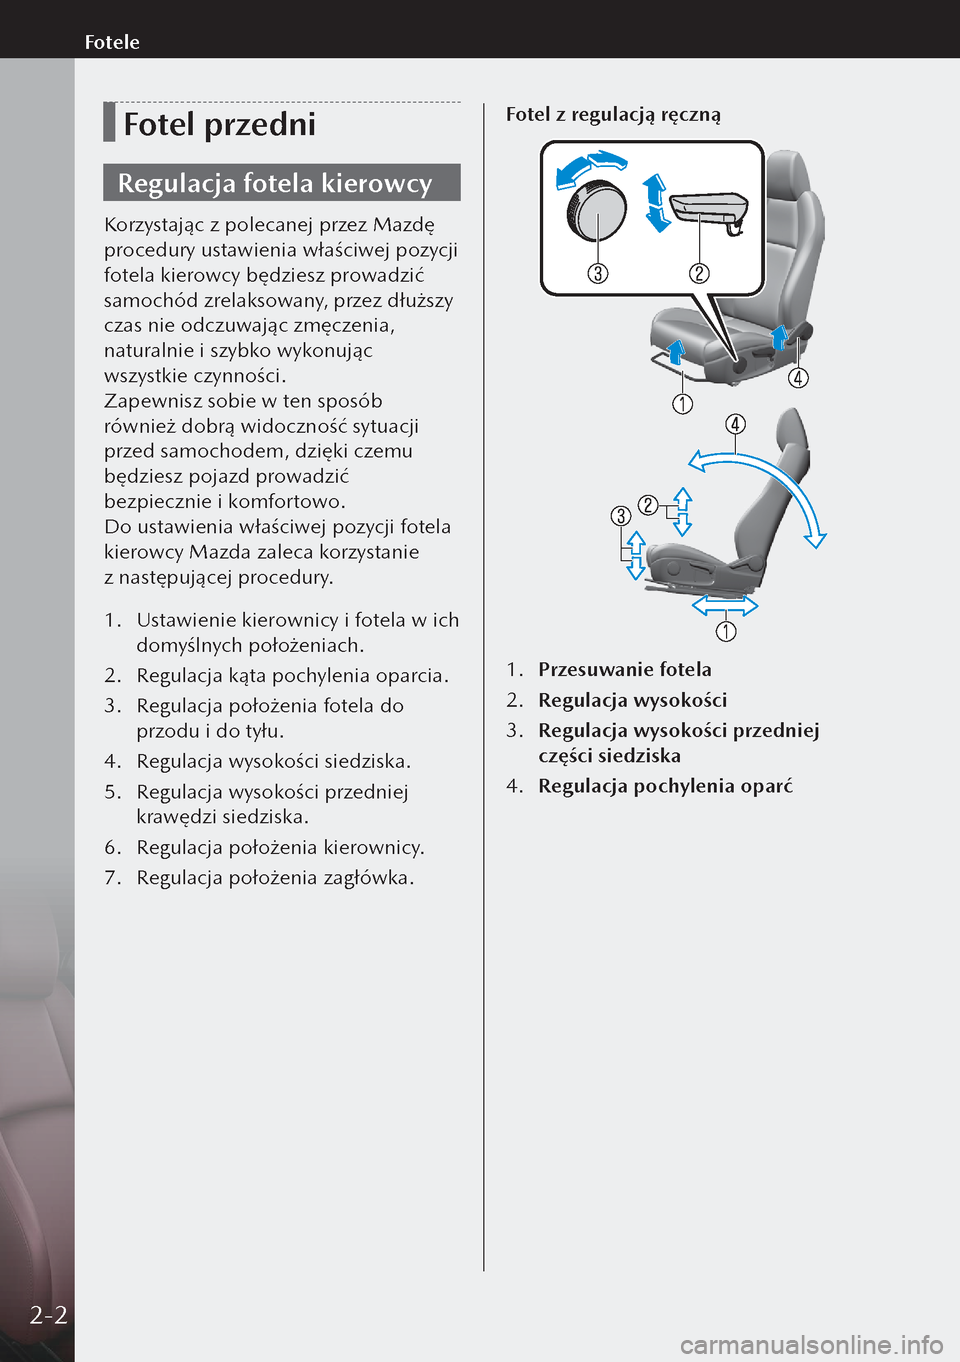 MAZDA MODEL 3 HATCHBACK 2019  Instrukcja Obsługi (in Polish) Fotel przedni
Regulacja fotela kierowcy
Korzystając z polecanej przez Mazdę 
procedury ustawienia właściwej pozycji 
fotela kierowcy będziesz prowadzić 
samochód zrelaksowany, przez dłuższy 
